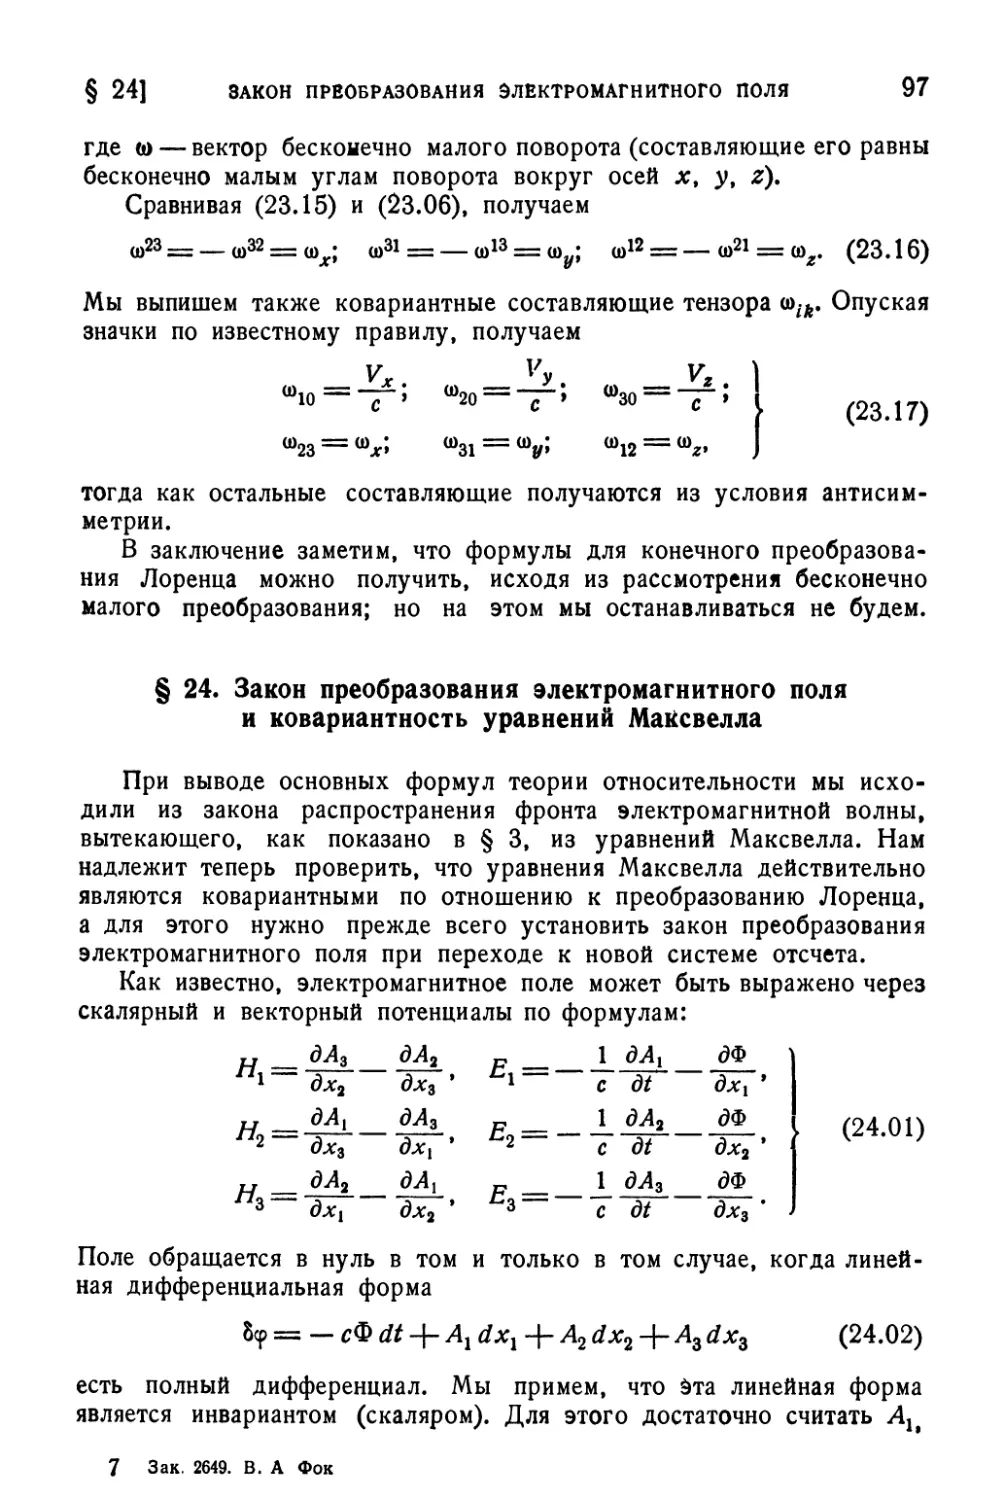 § 24. Закон преобразования электромагнитного поля и ковариантность уравнений Максвелла